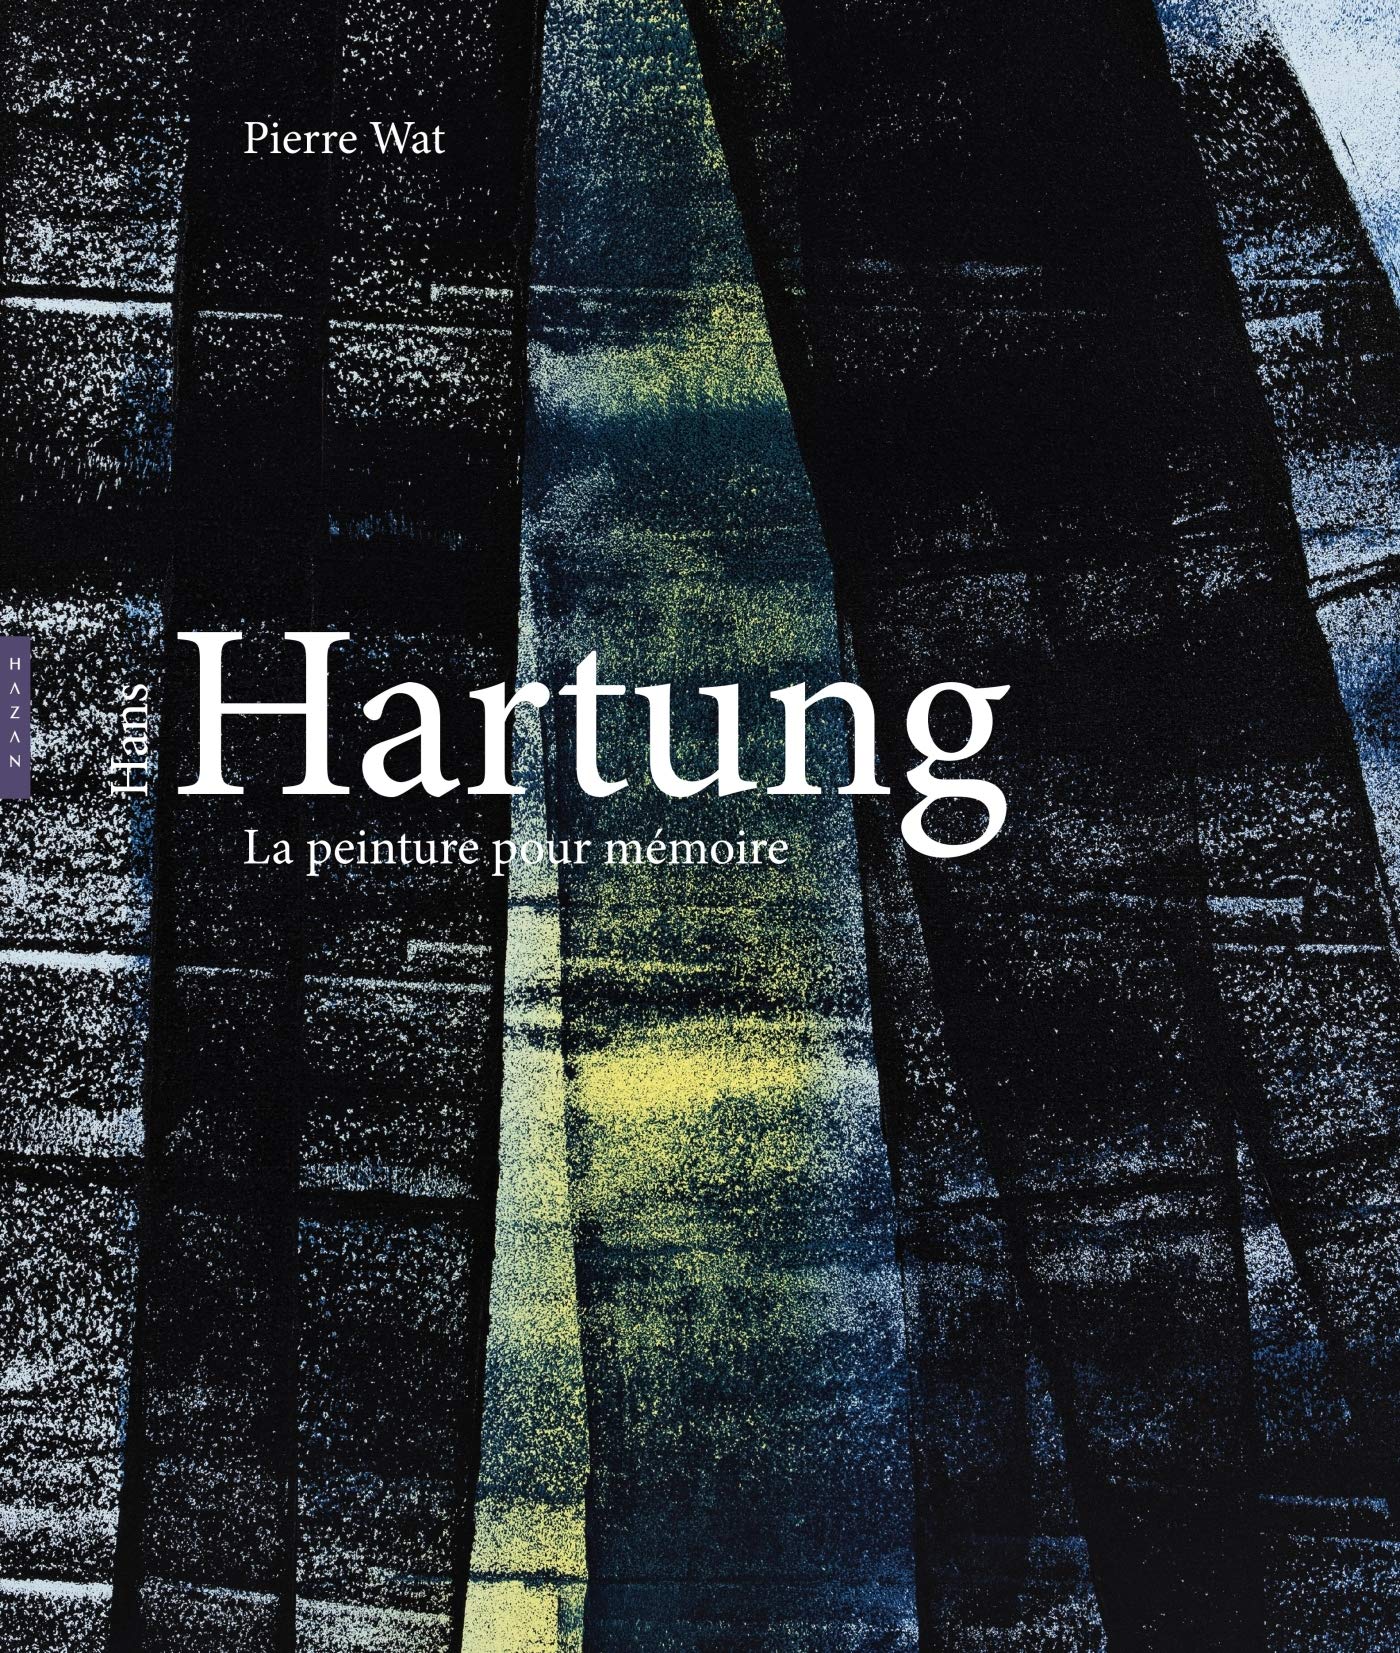 Hans Hartung, La peinture pour mémoire